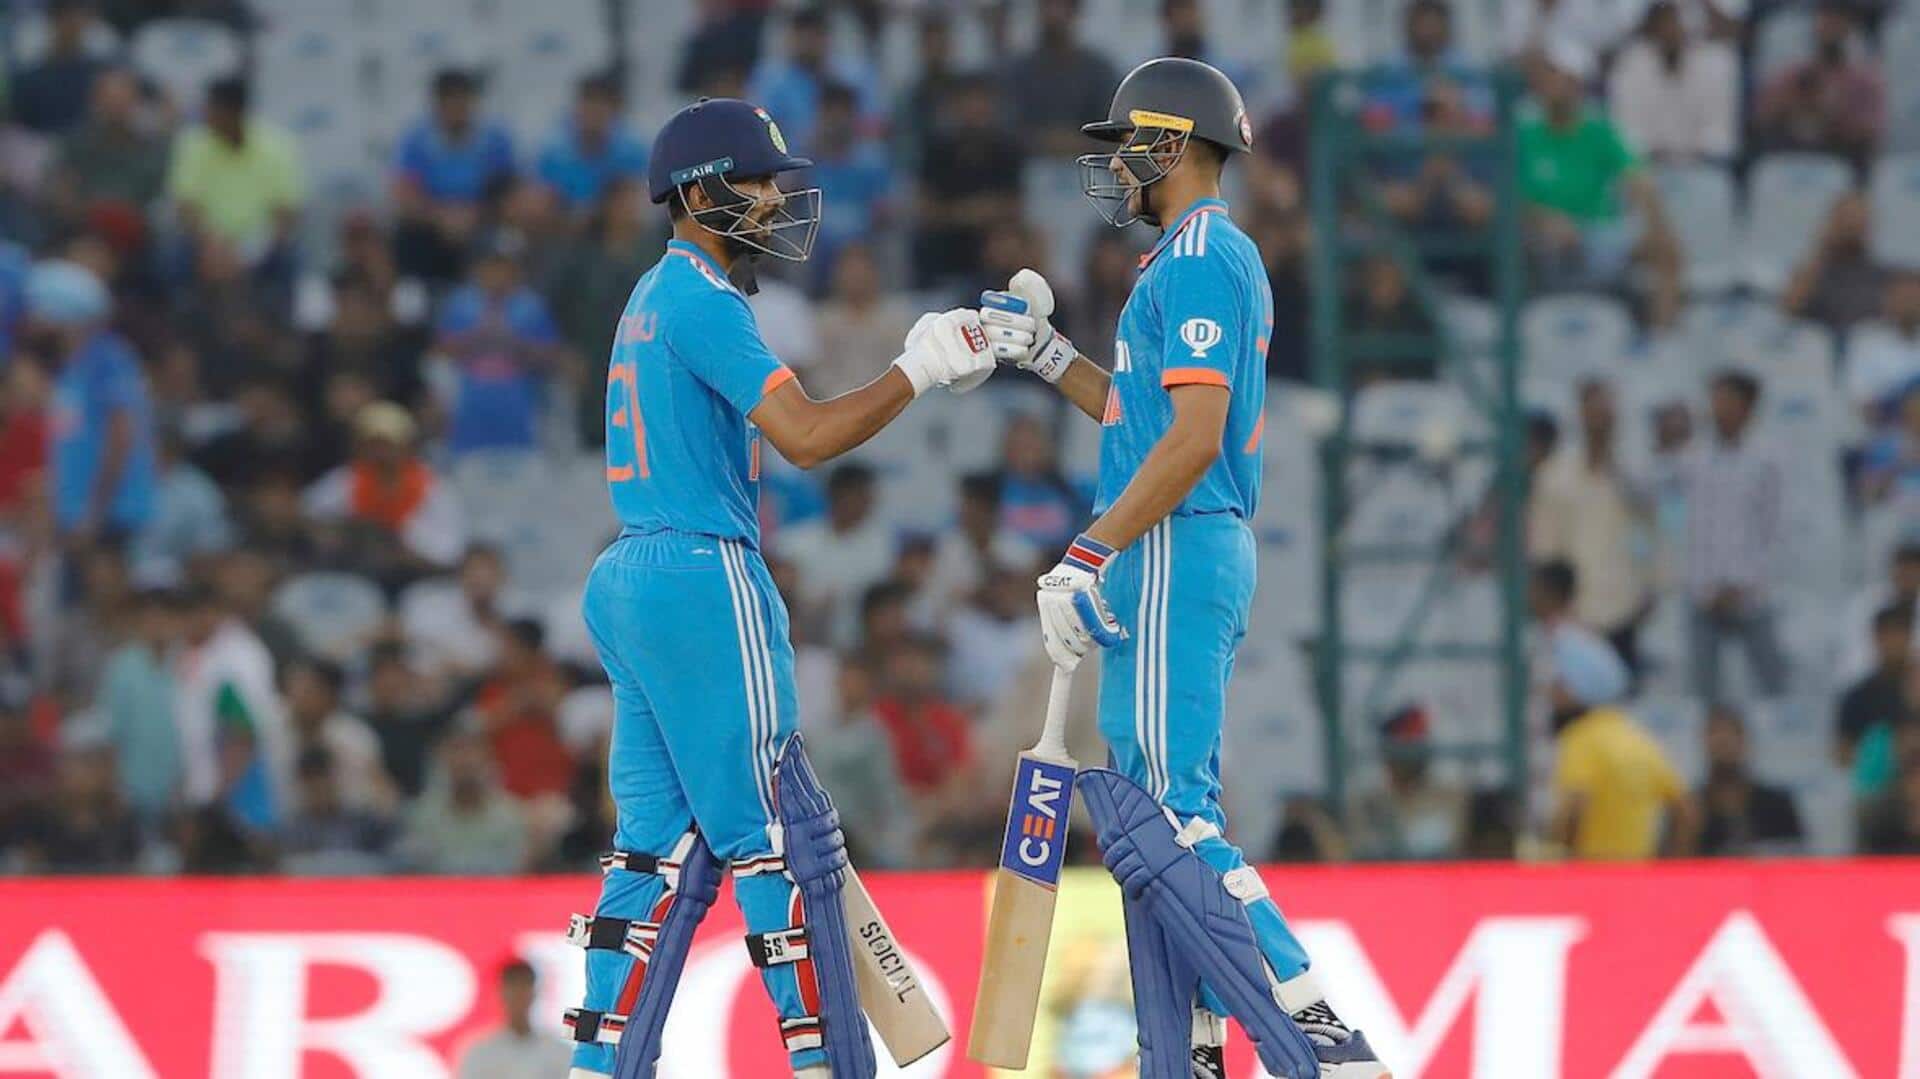 दूसरा वनडे: भारत के खिलाफ ऑस्ट्रेलिया ने टॉस जीतकर चुनी गेंदबाजी, जानिए प्लेइंग इलेवन  